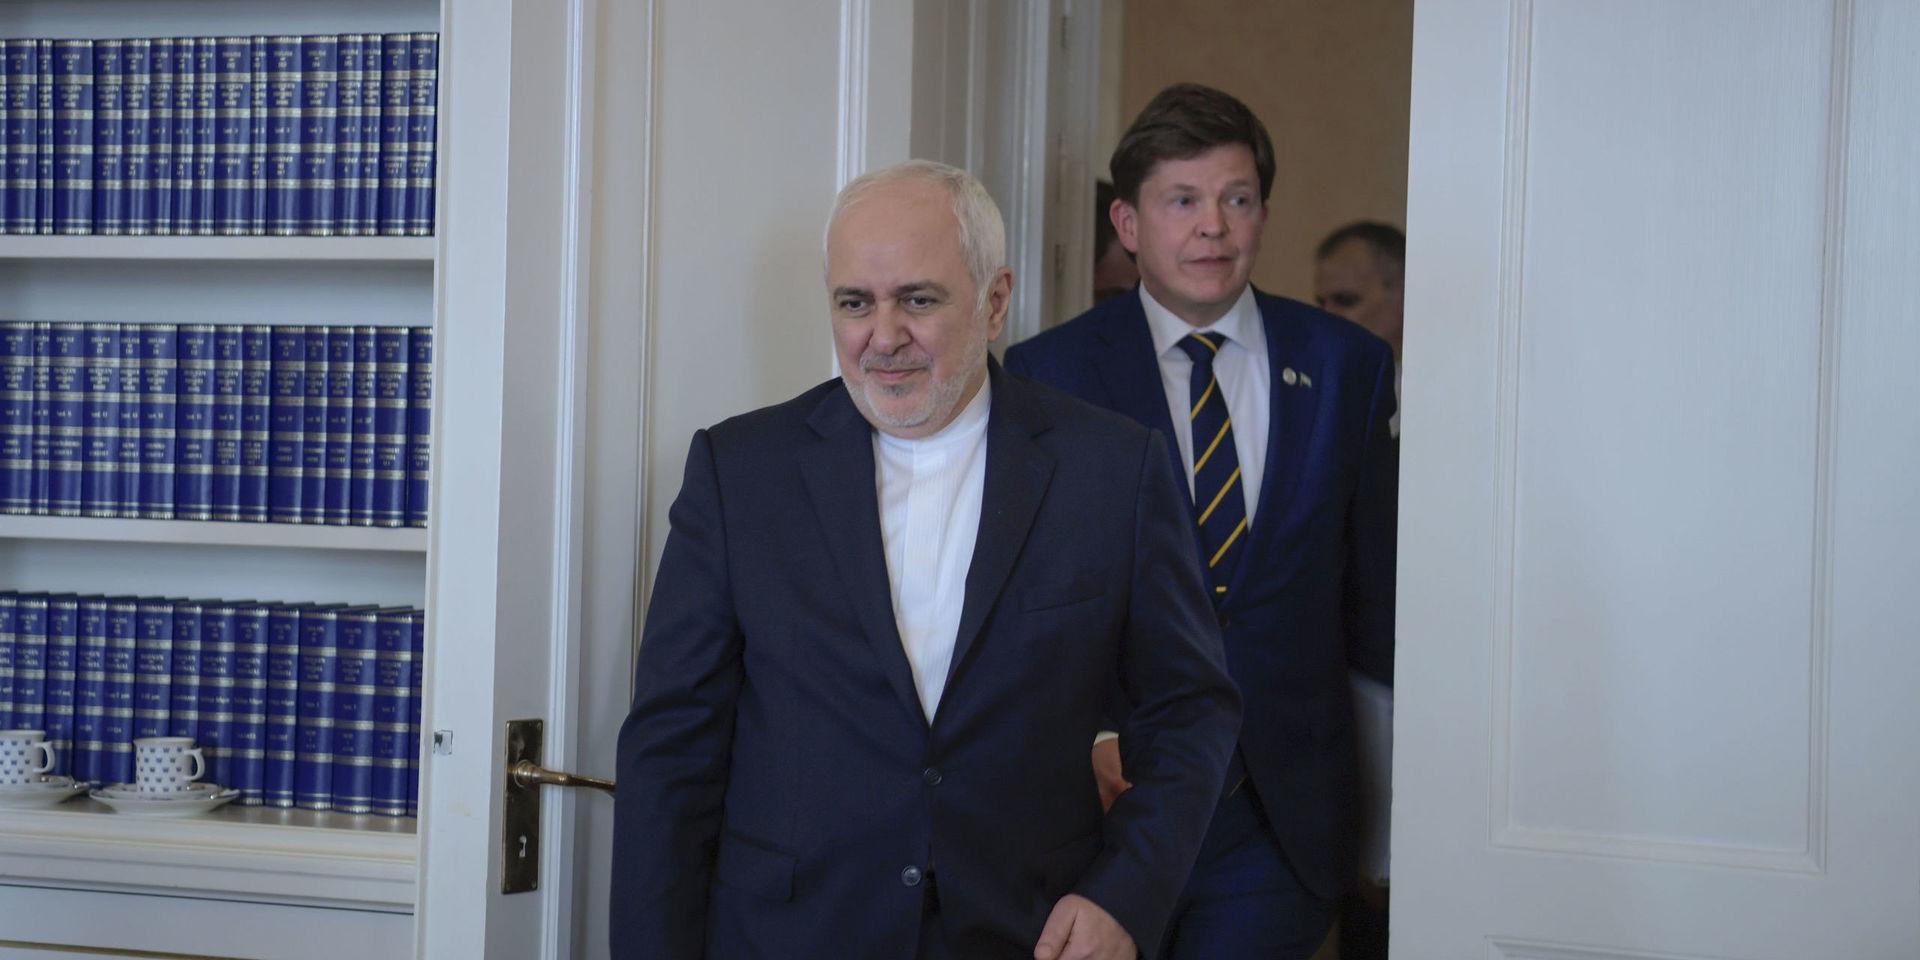 Riksdagens talman Andreas Norlén tog emot Irans utrikesminister Mohammad Javad Zarif i Riksdagen på onsdagseftermiddagen.